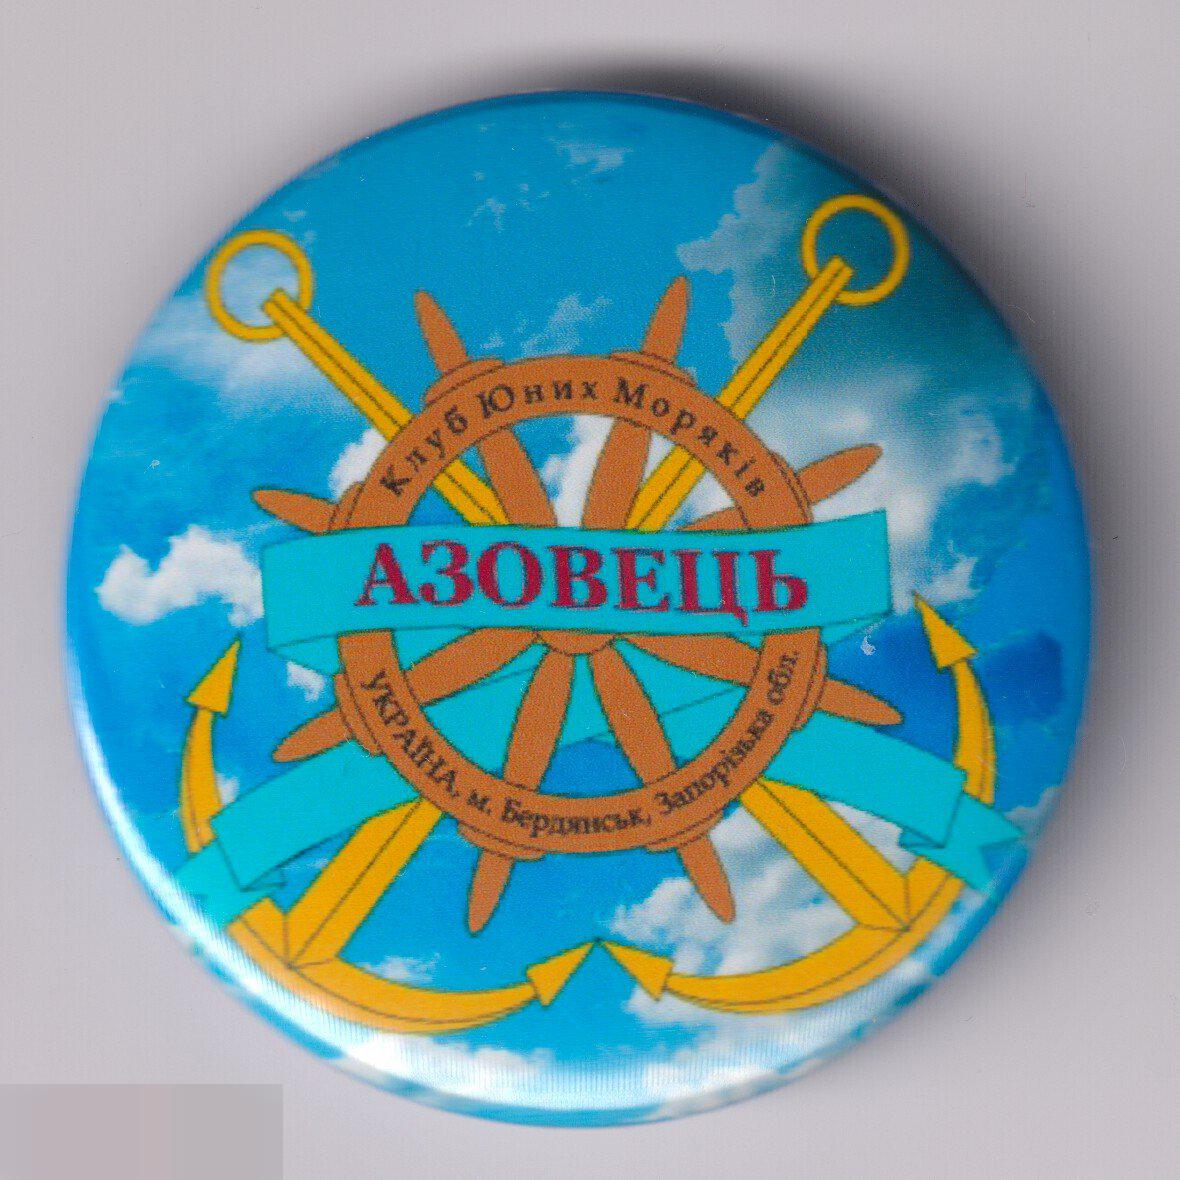 Бердянск, клуб юных моряков Азовецъ